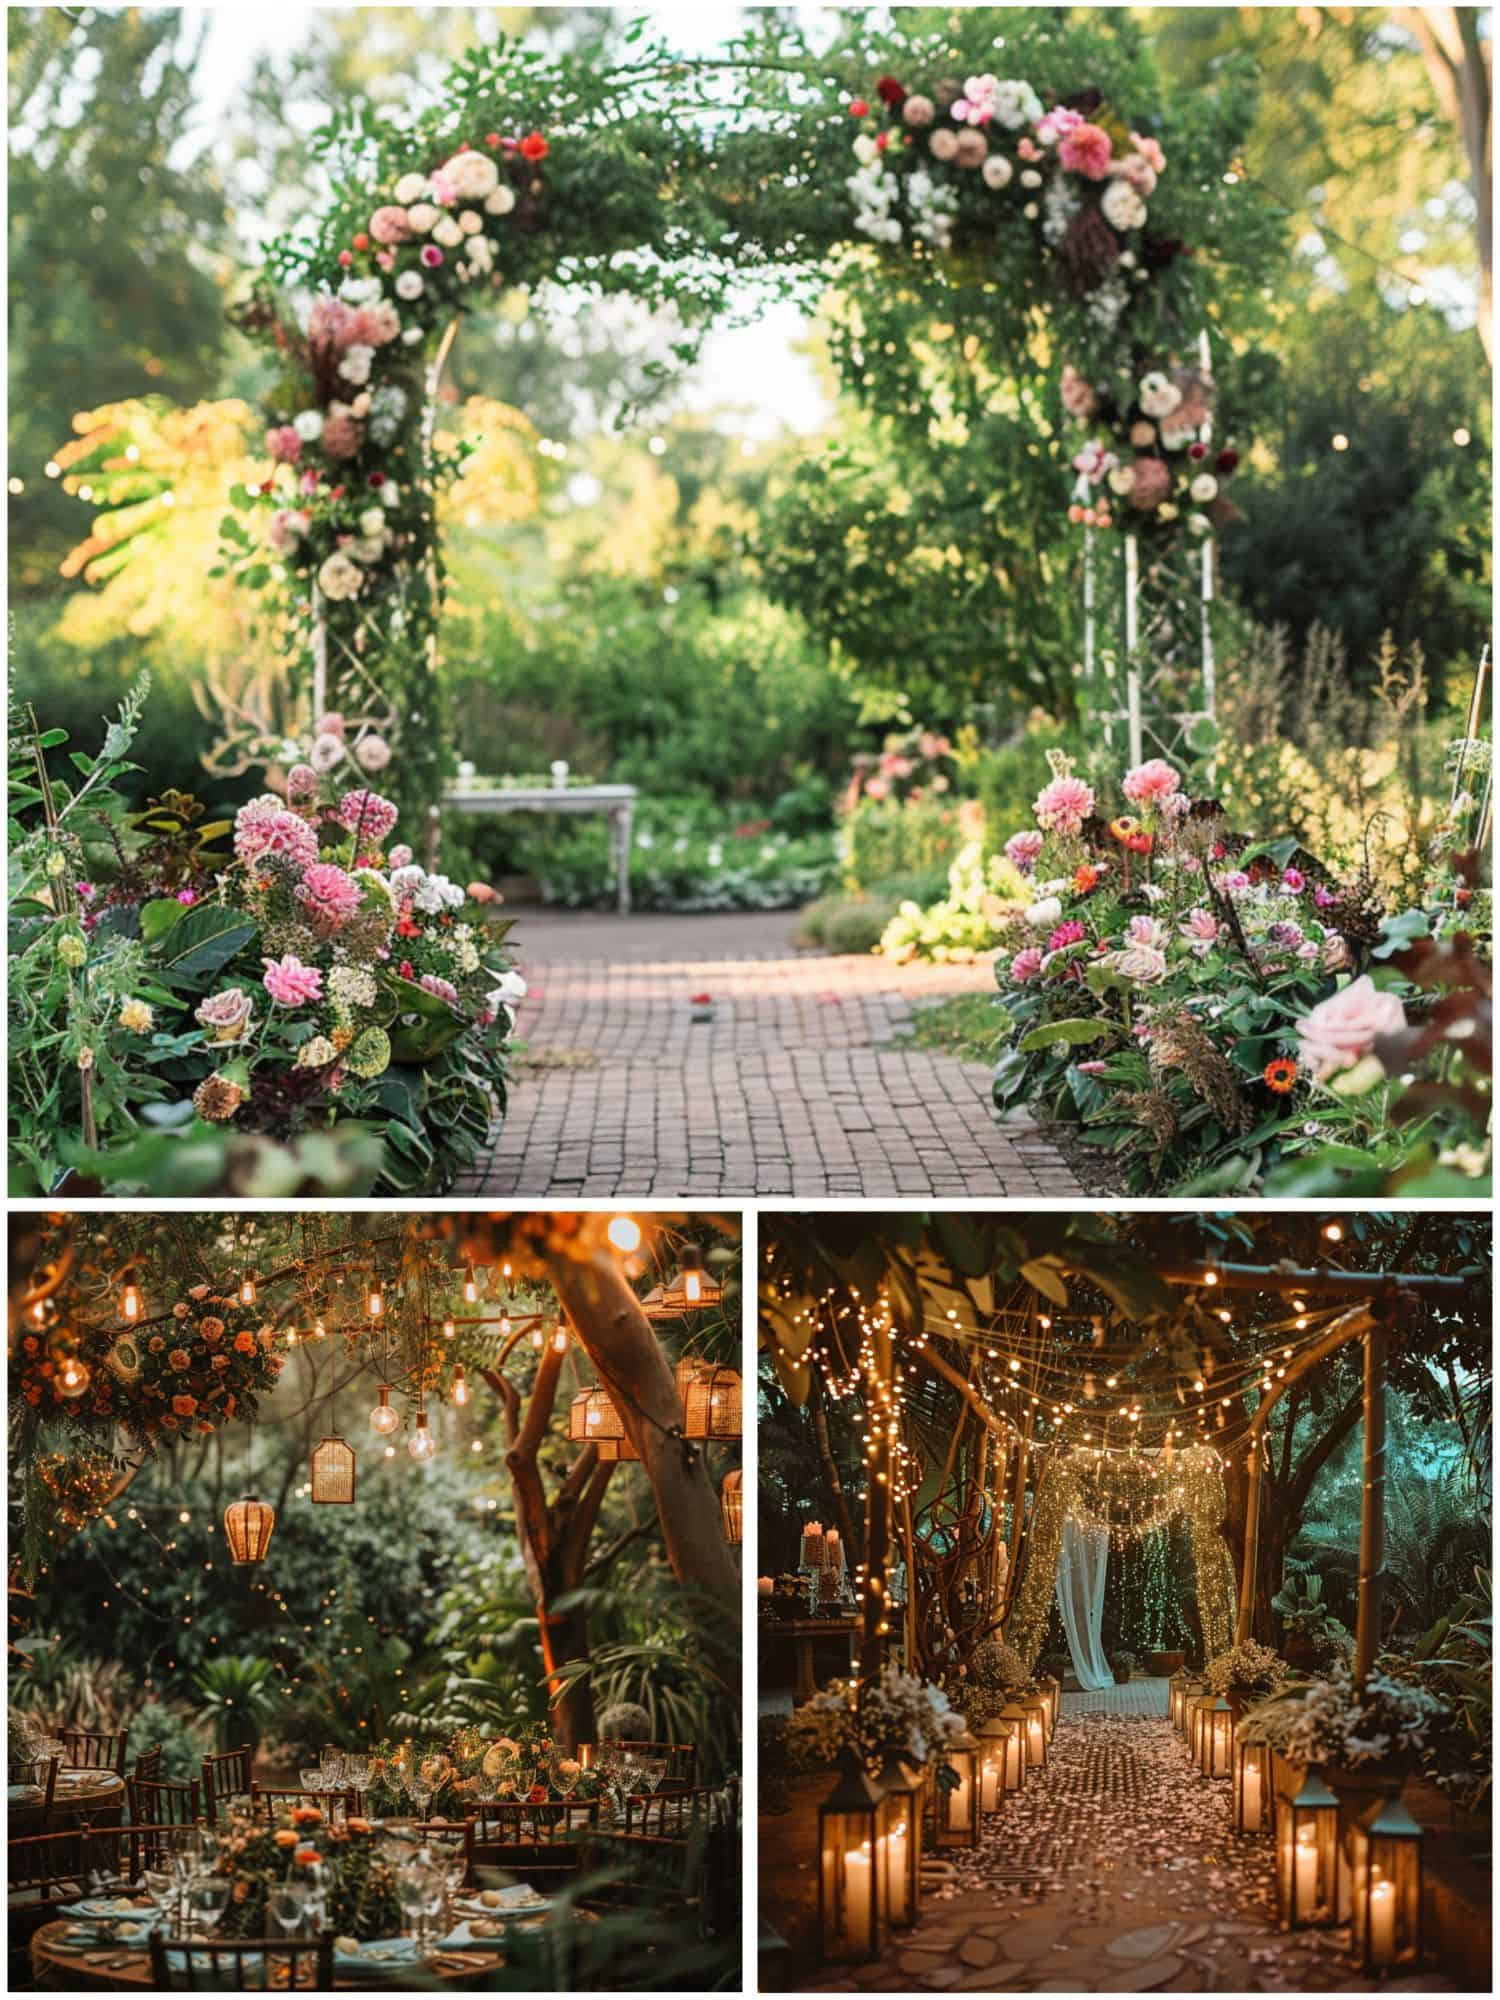 romantic wedding theme ideas for garden delights